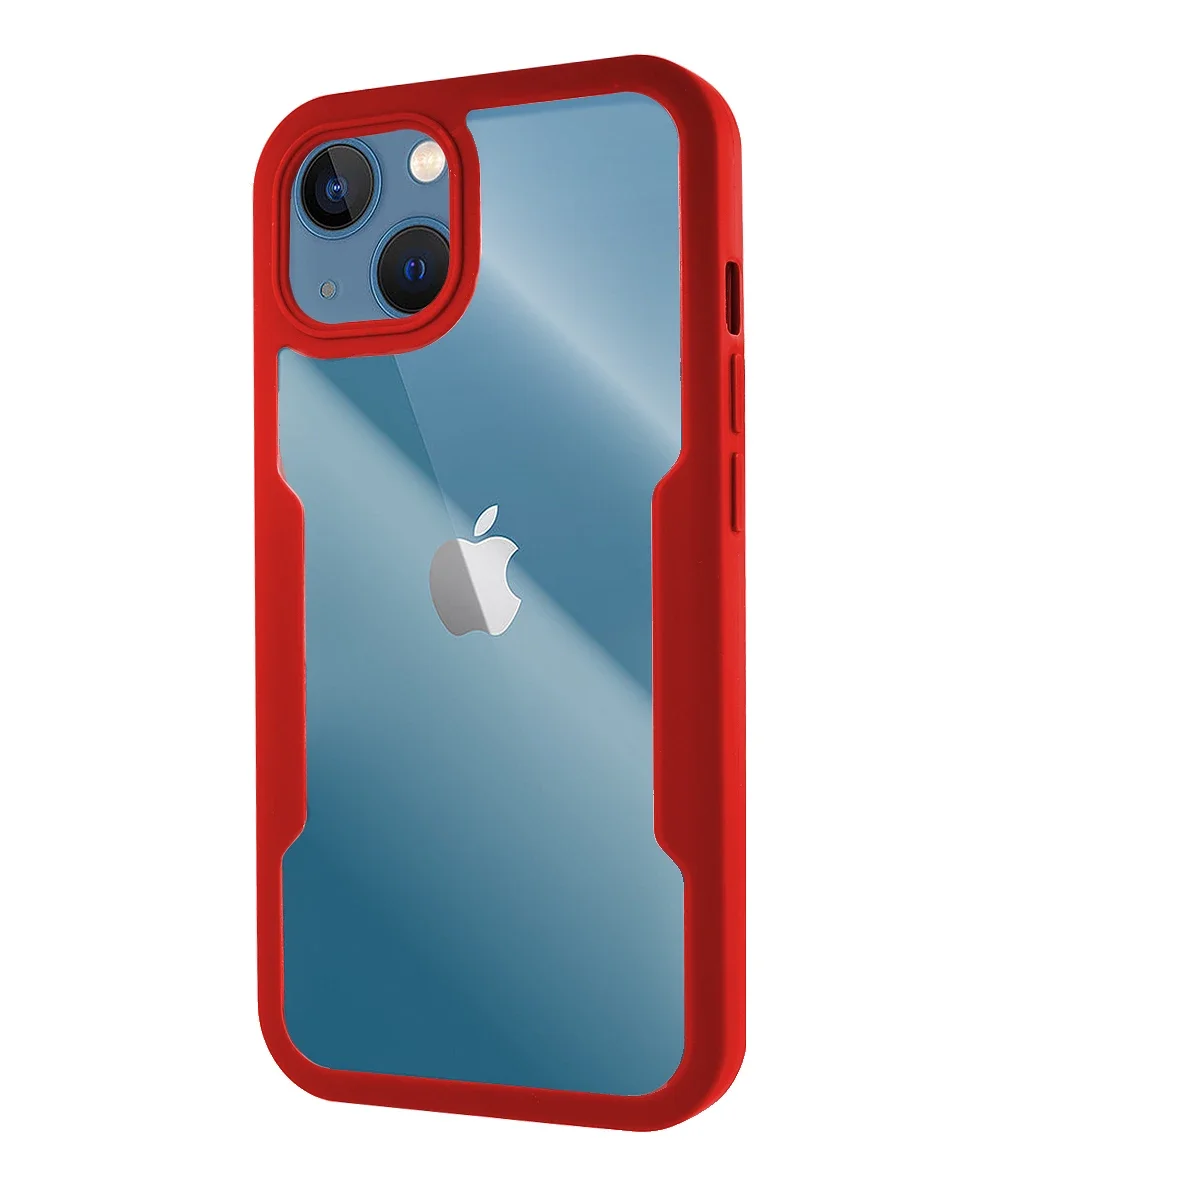 Comprar Funda iPhone 13 Mini - Dual Mate - Rojo+Negro